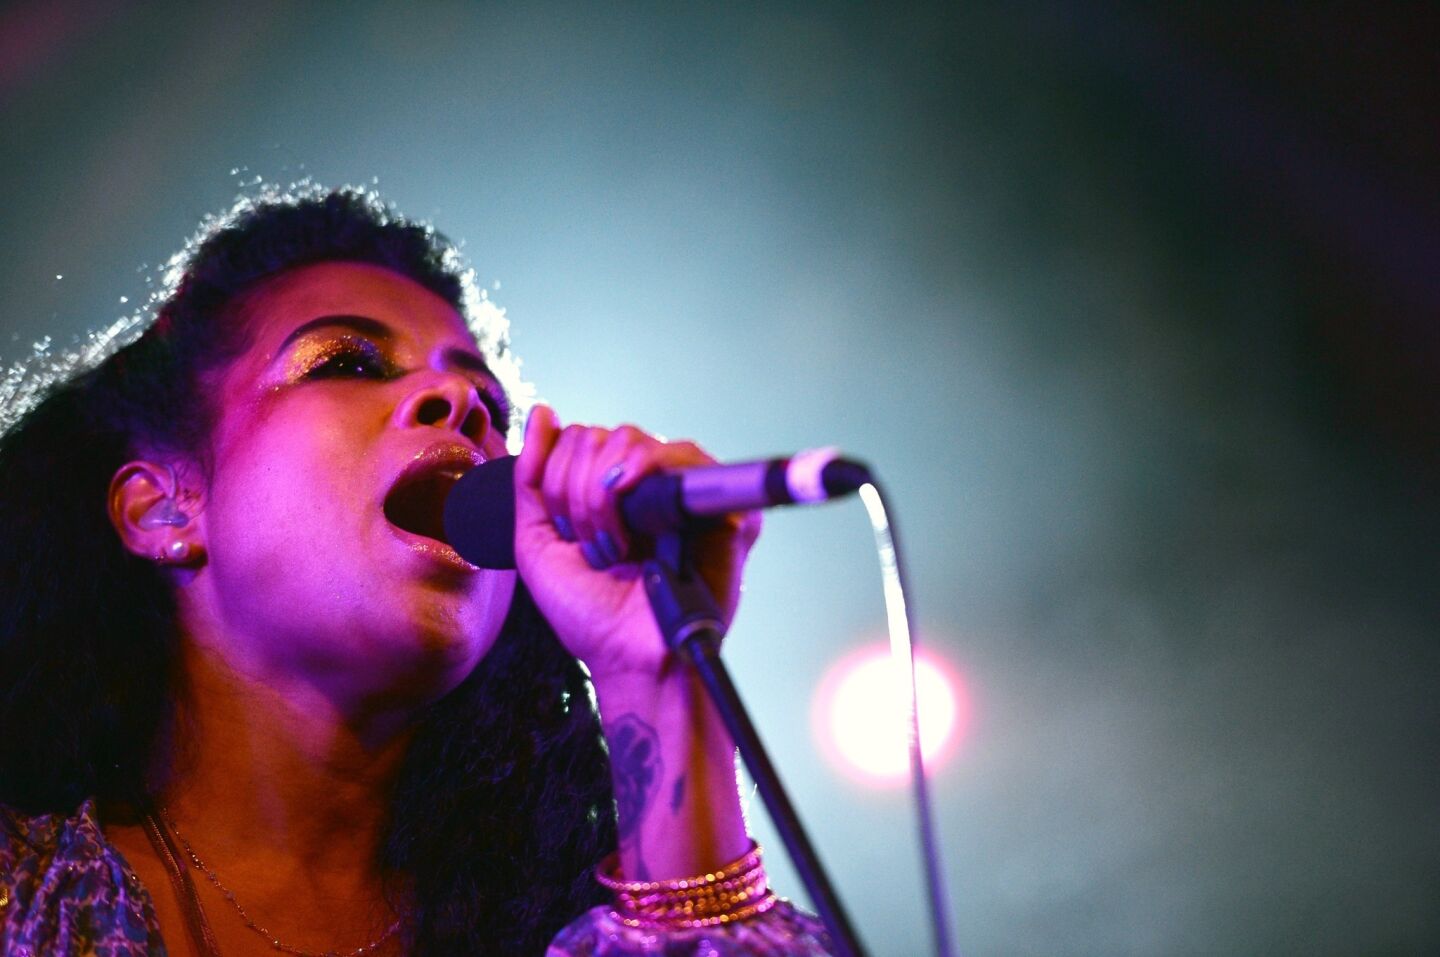 Singer Kelis performs during SXSW.